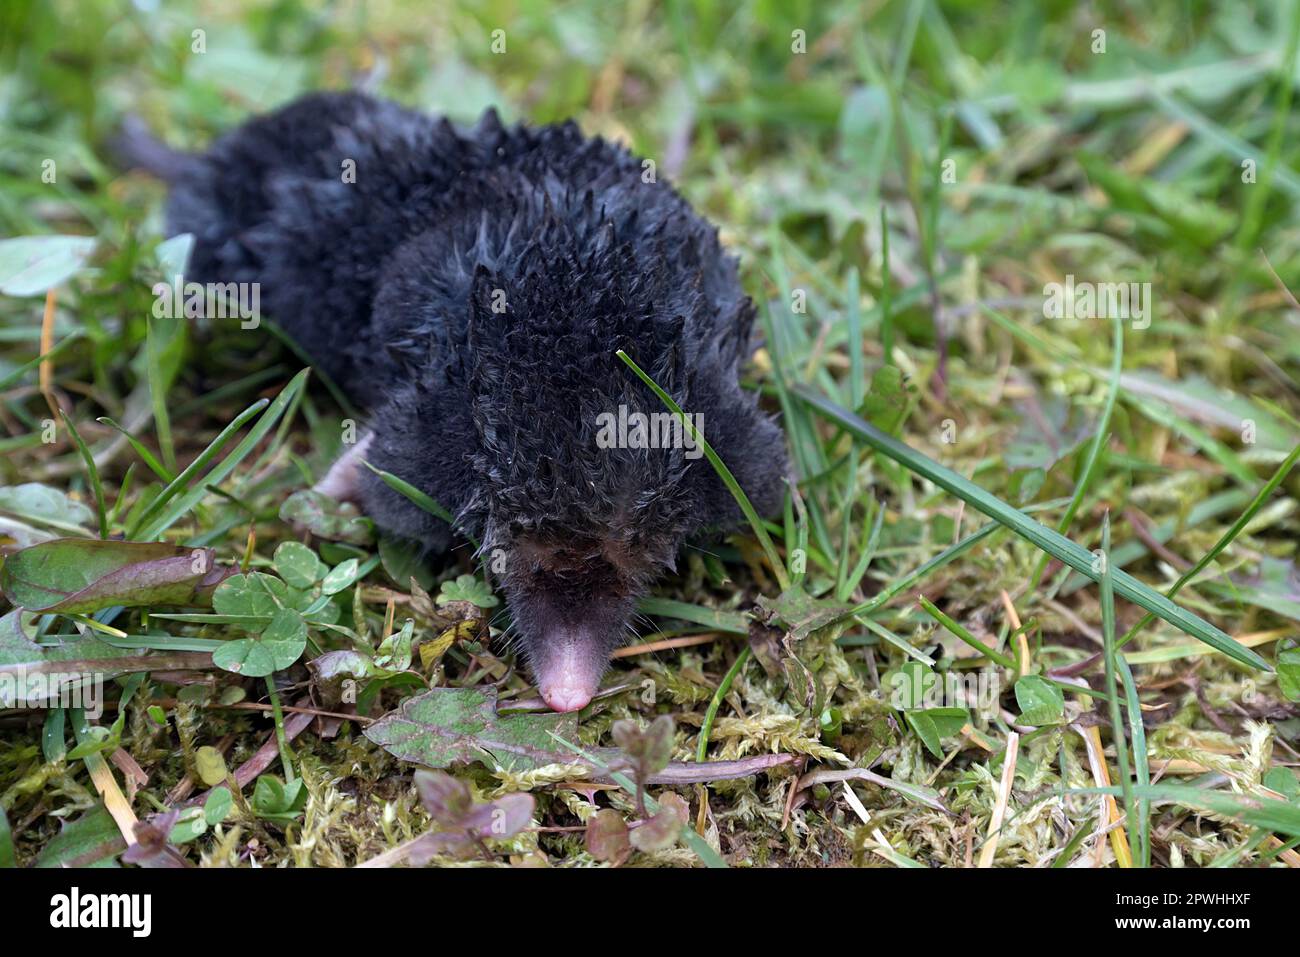 Mole (Talpidae) in grass, Bavaria, Germany Stock Photo